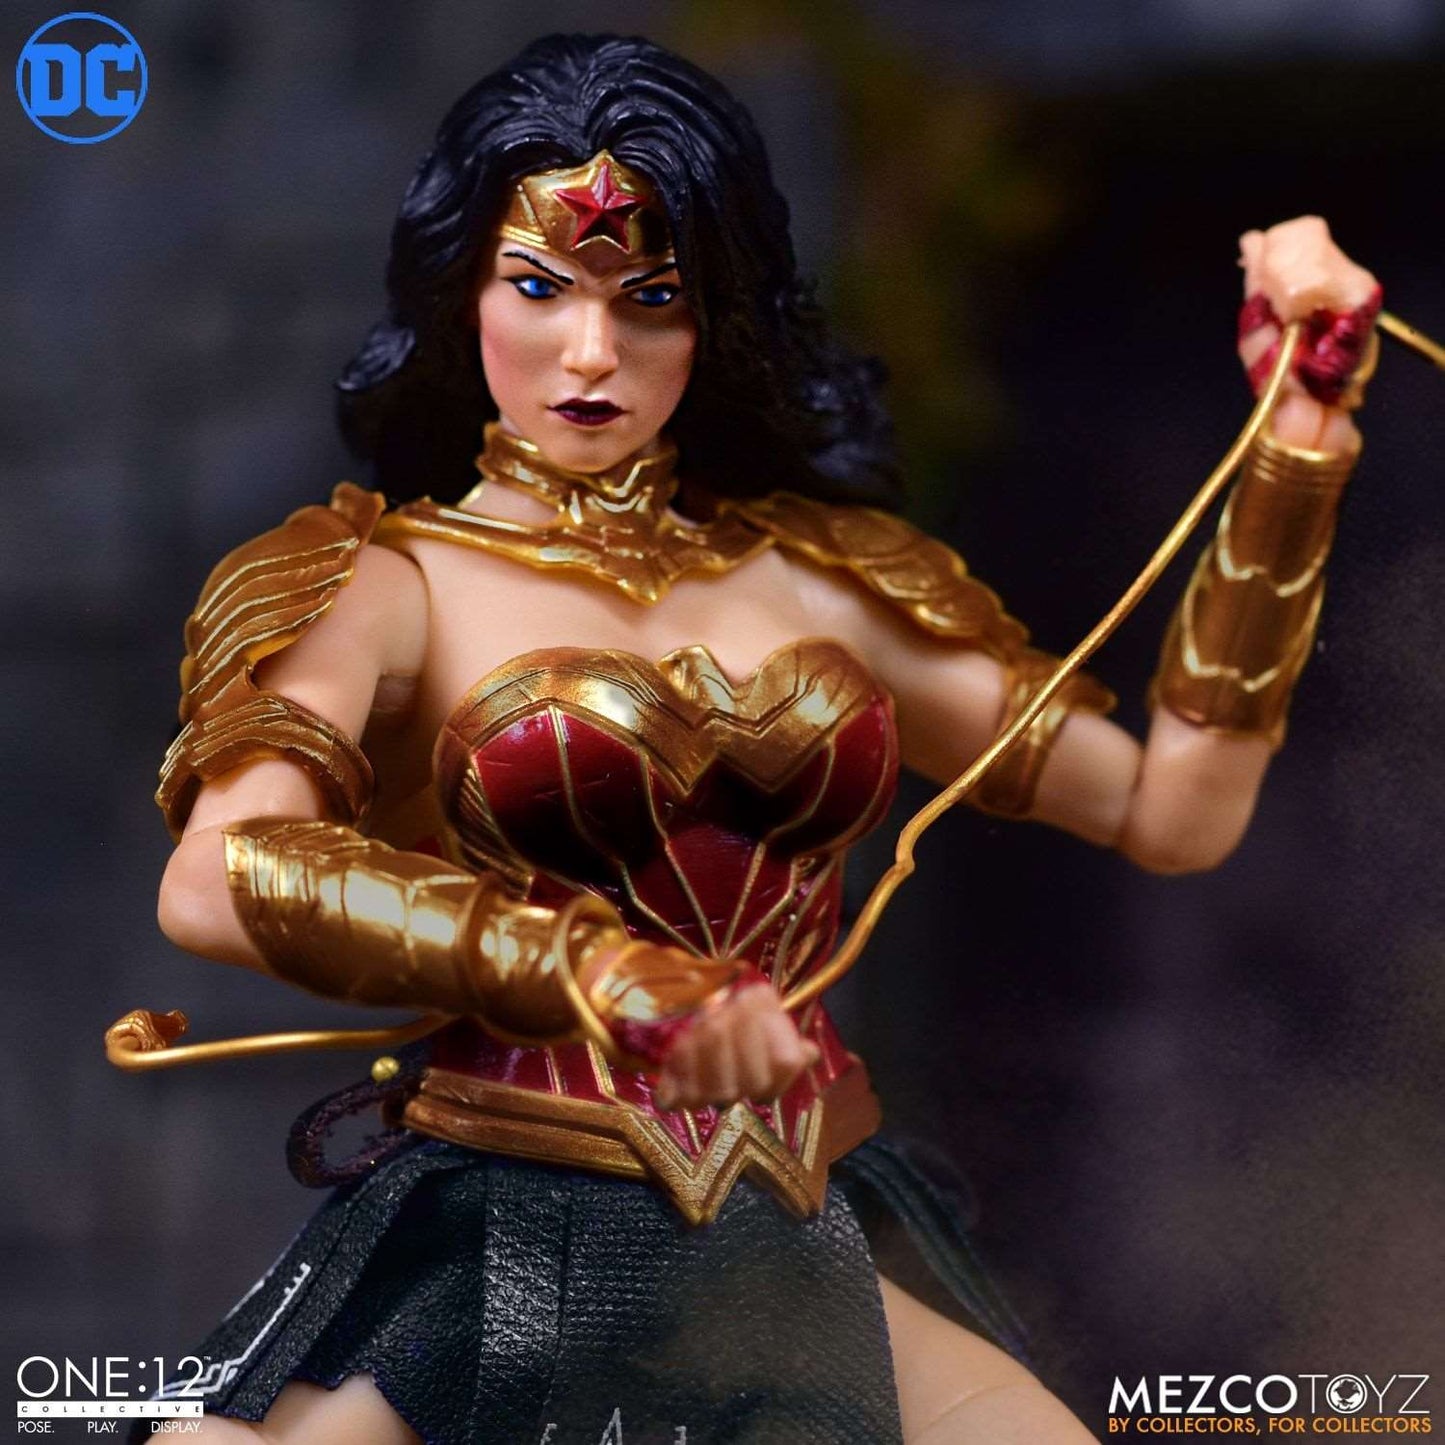 Mezco One:12 DC Universe Wonder Woman figure and golden lasso